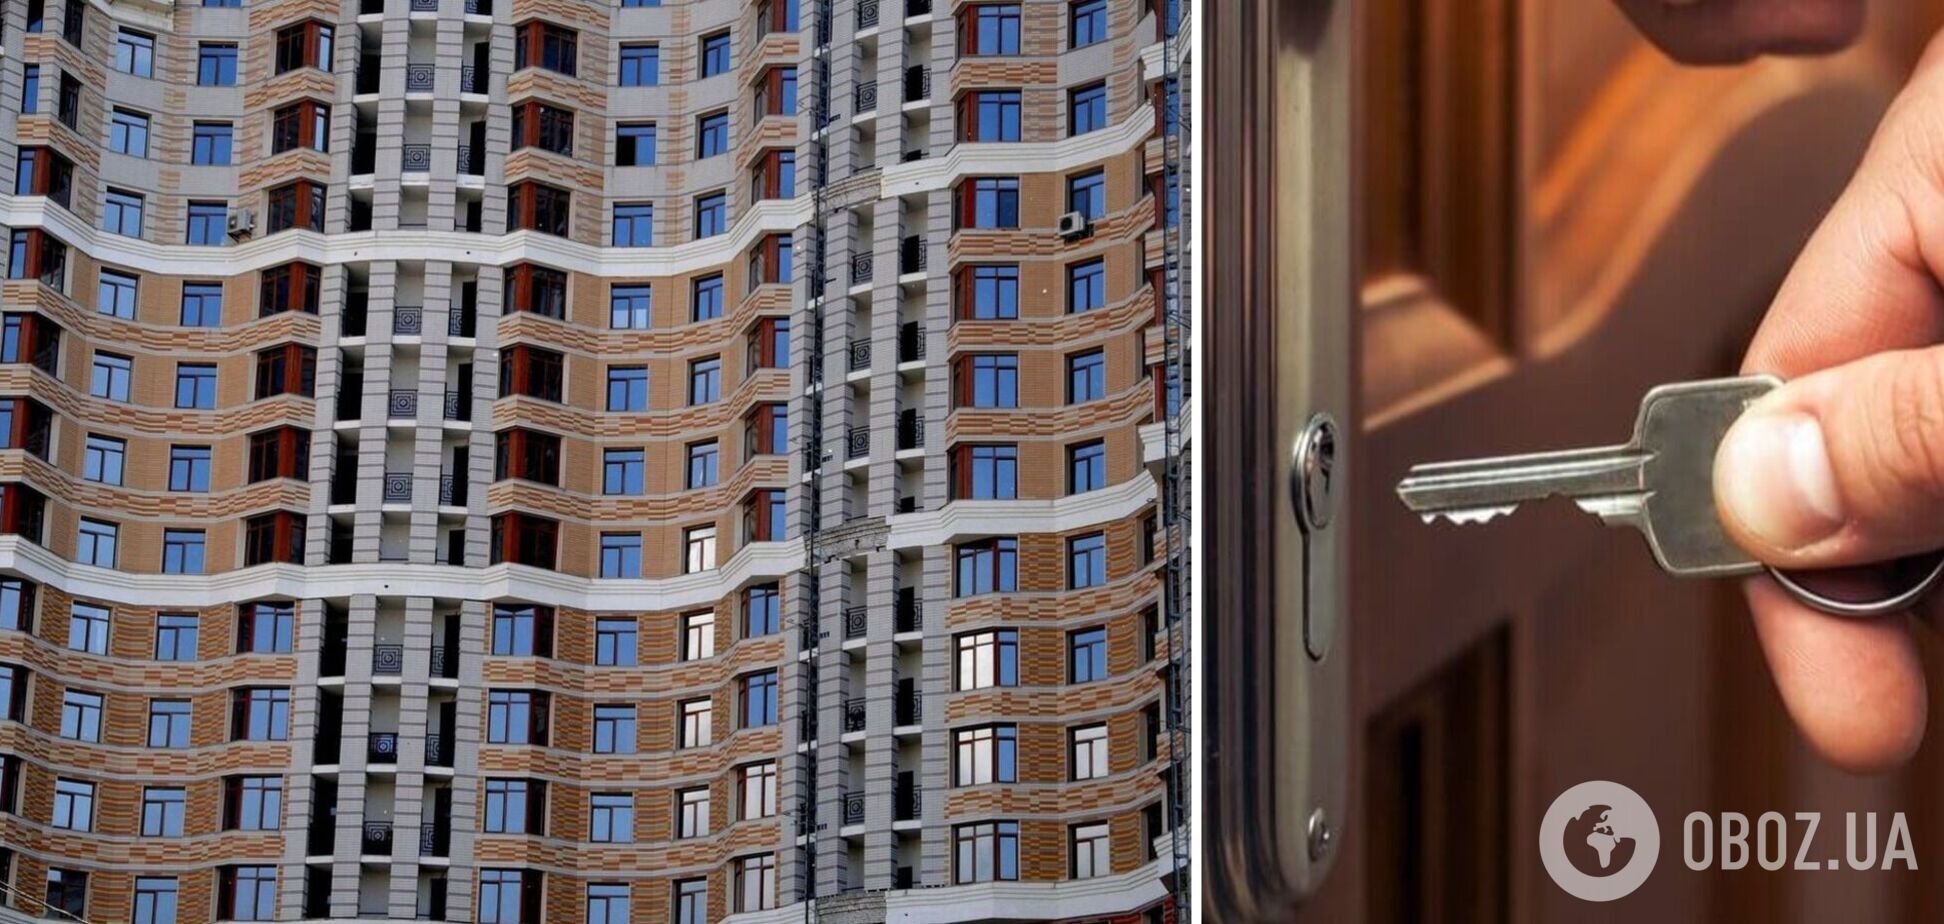 Рынок недвижимости Украины ожил по сравнению с первым годом полномасштабной войны